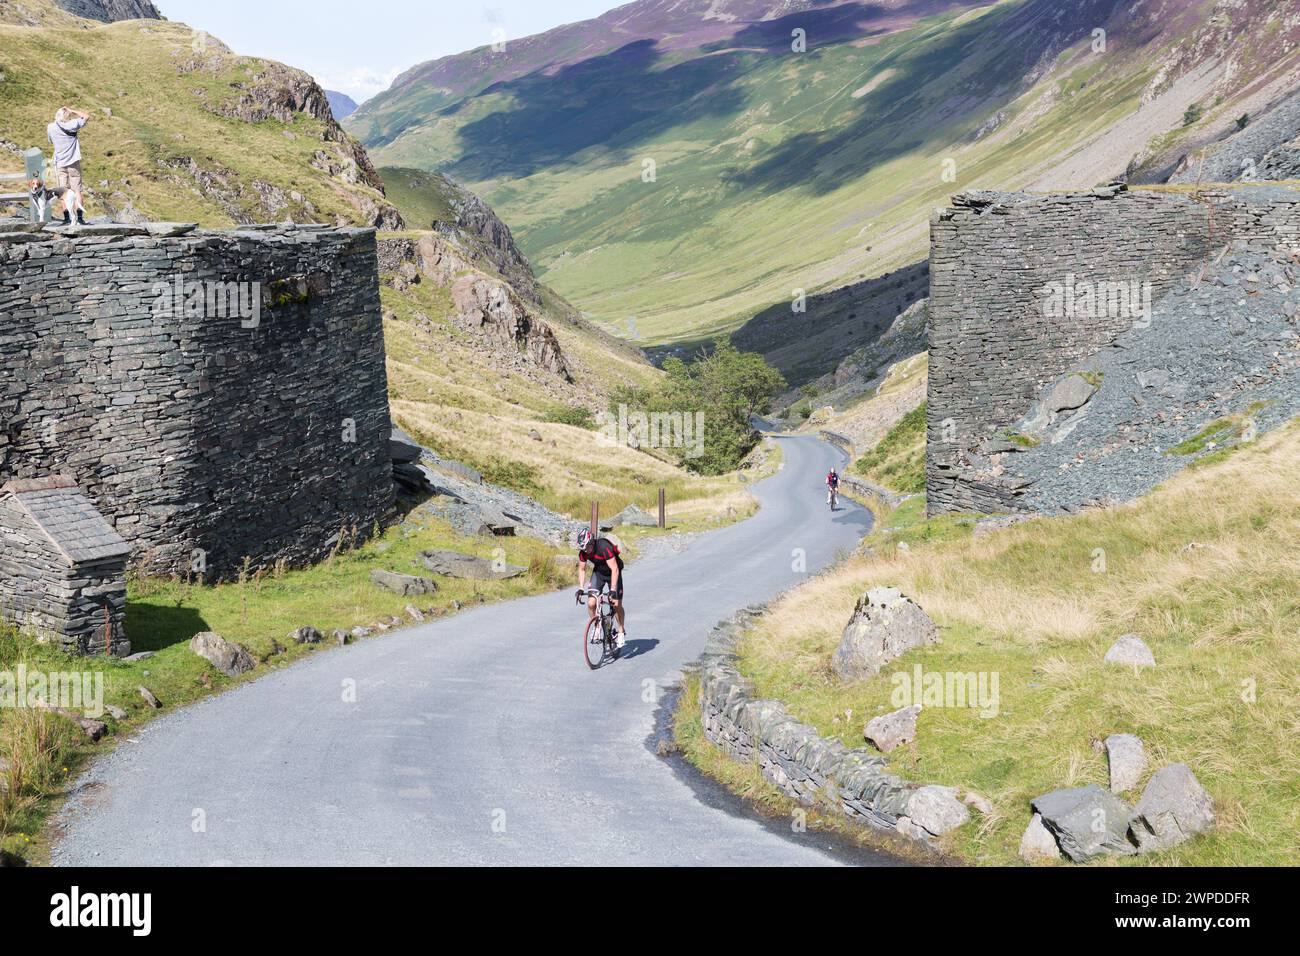 Royaume-Uni, Cumbria, Honnister Pass, cyclistes montant Honnister Pass, l'une des routes les plus raides du Royaume-Uni. Banque D'Images